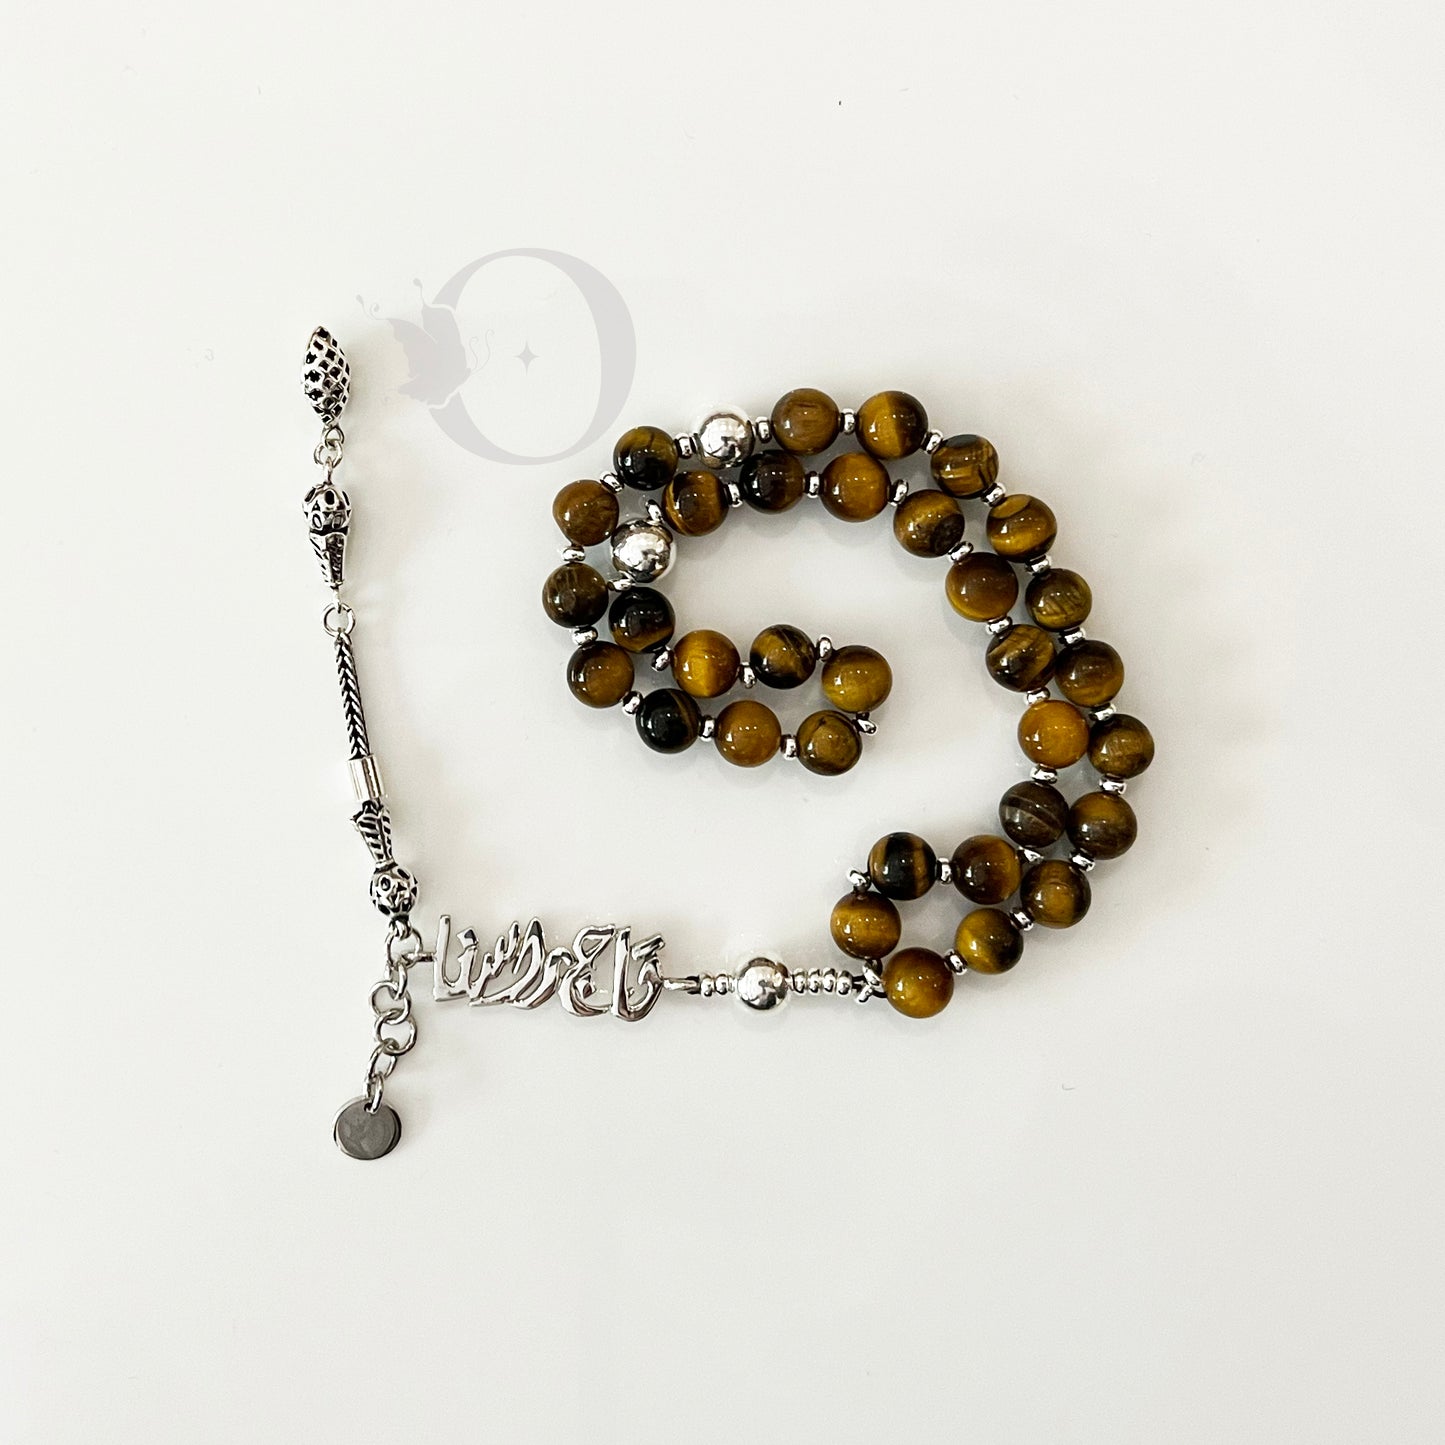 Taj -Tiger-eye 33-bead rosary